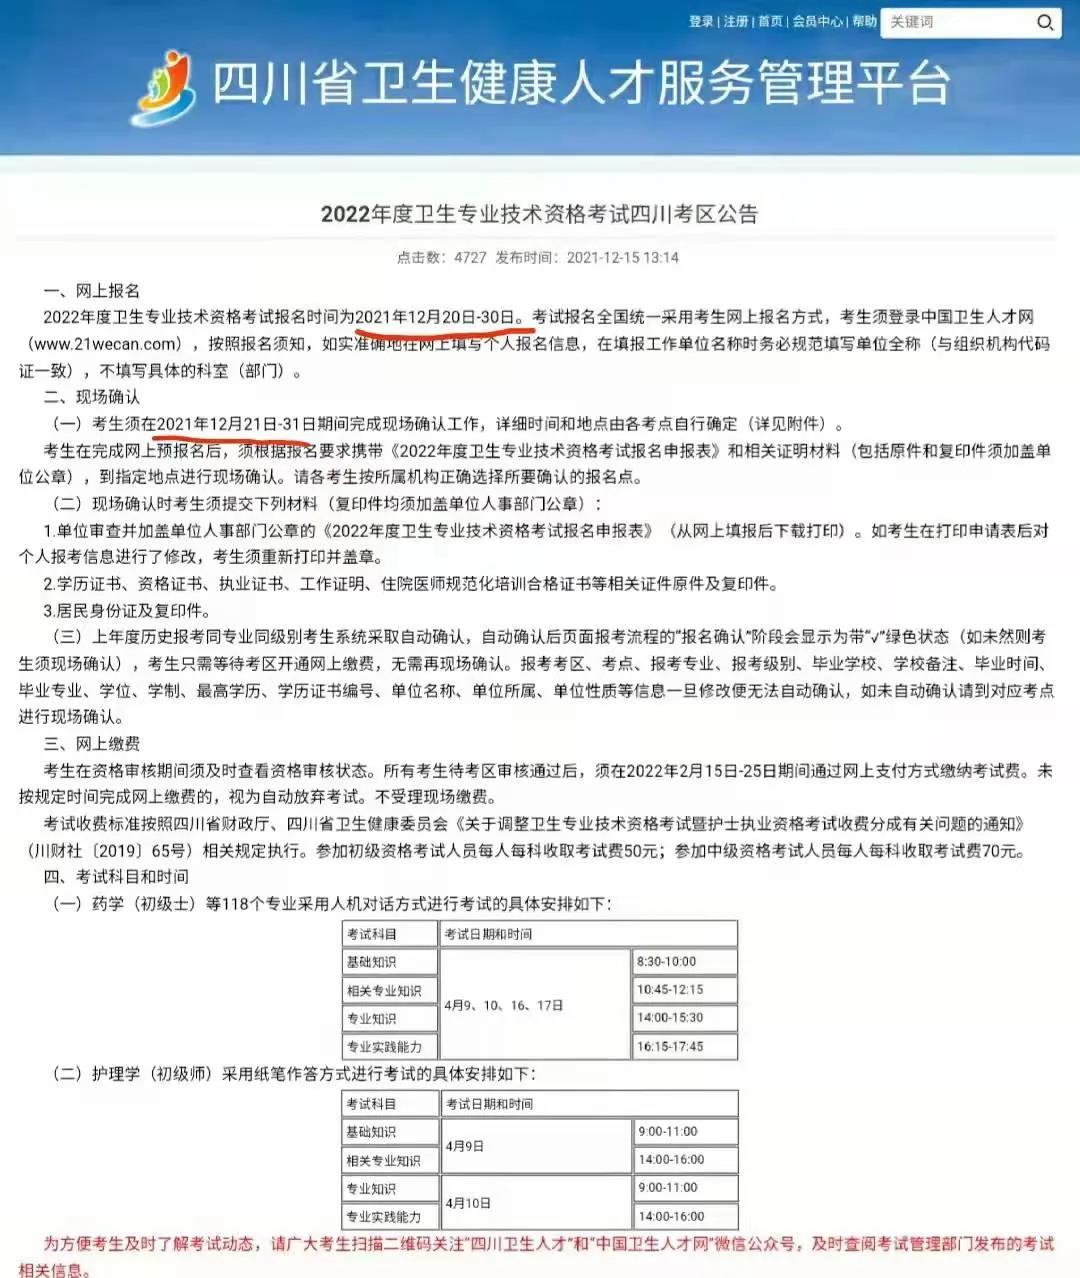 2022年4月1~17日，考生可登录中国卫生人才网打印准考证。.jpg